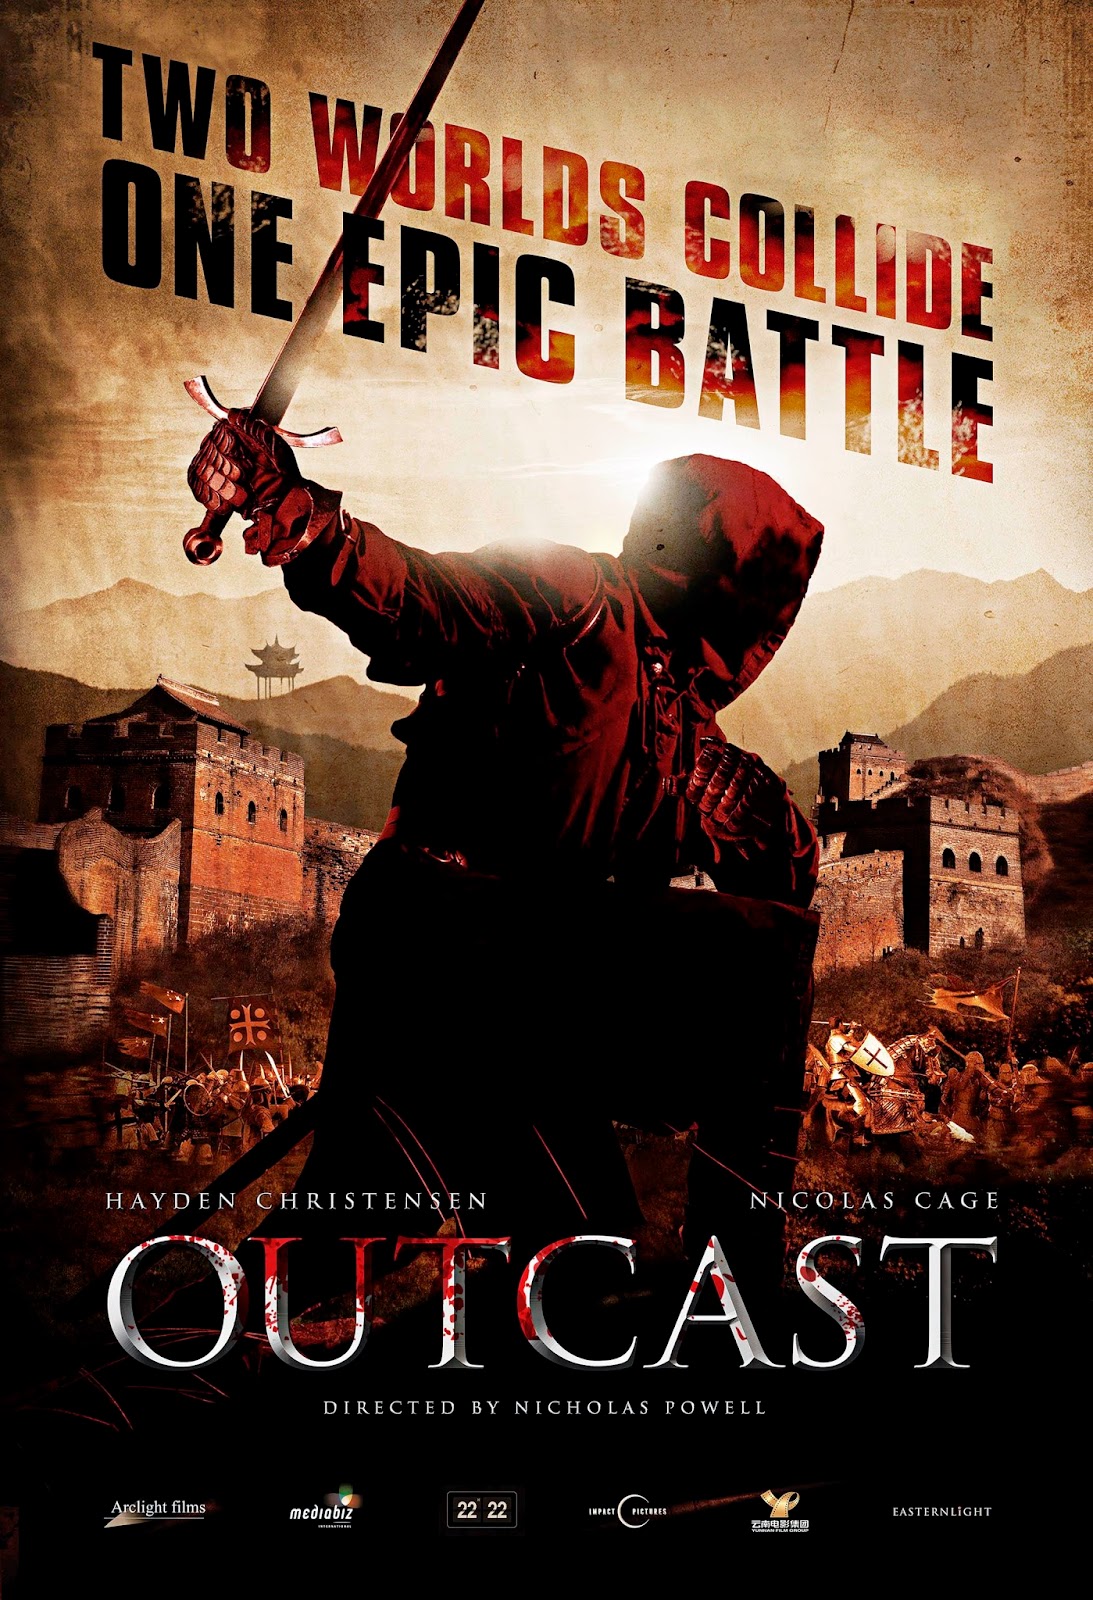 Outcast-Official Poster Banner PROMO PHOTOS-05AGOSTO2014-01